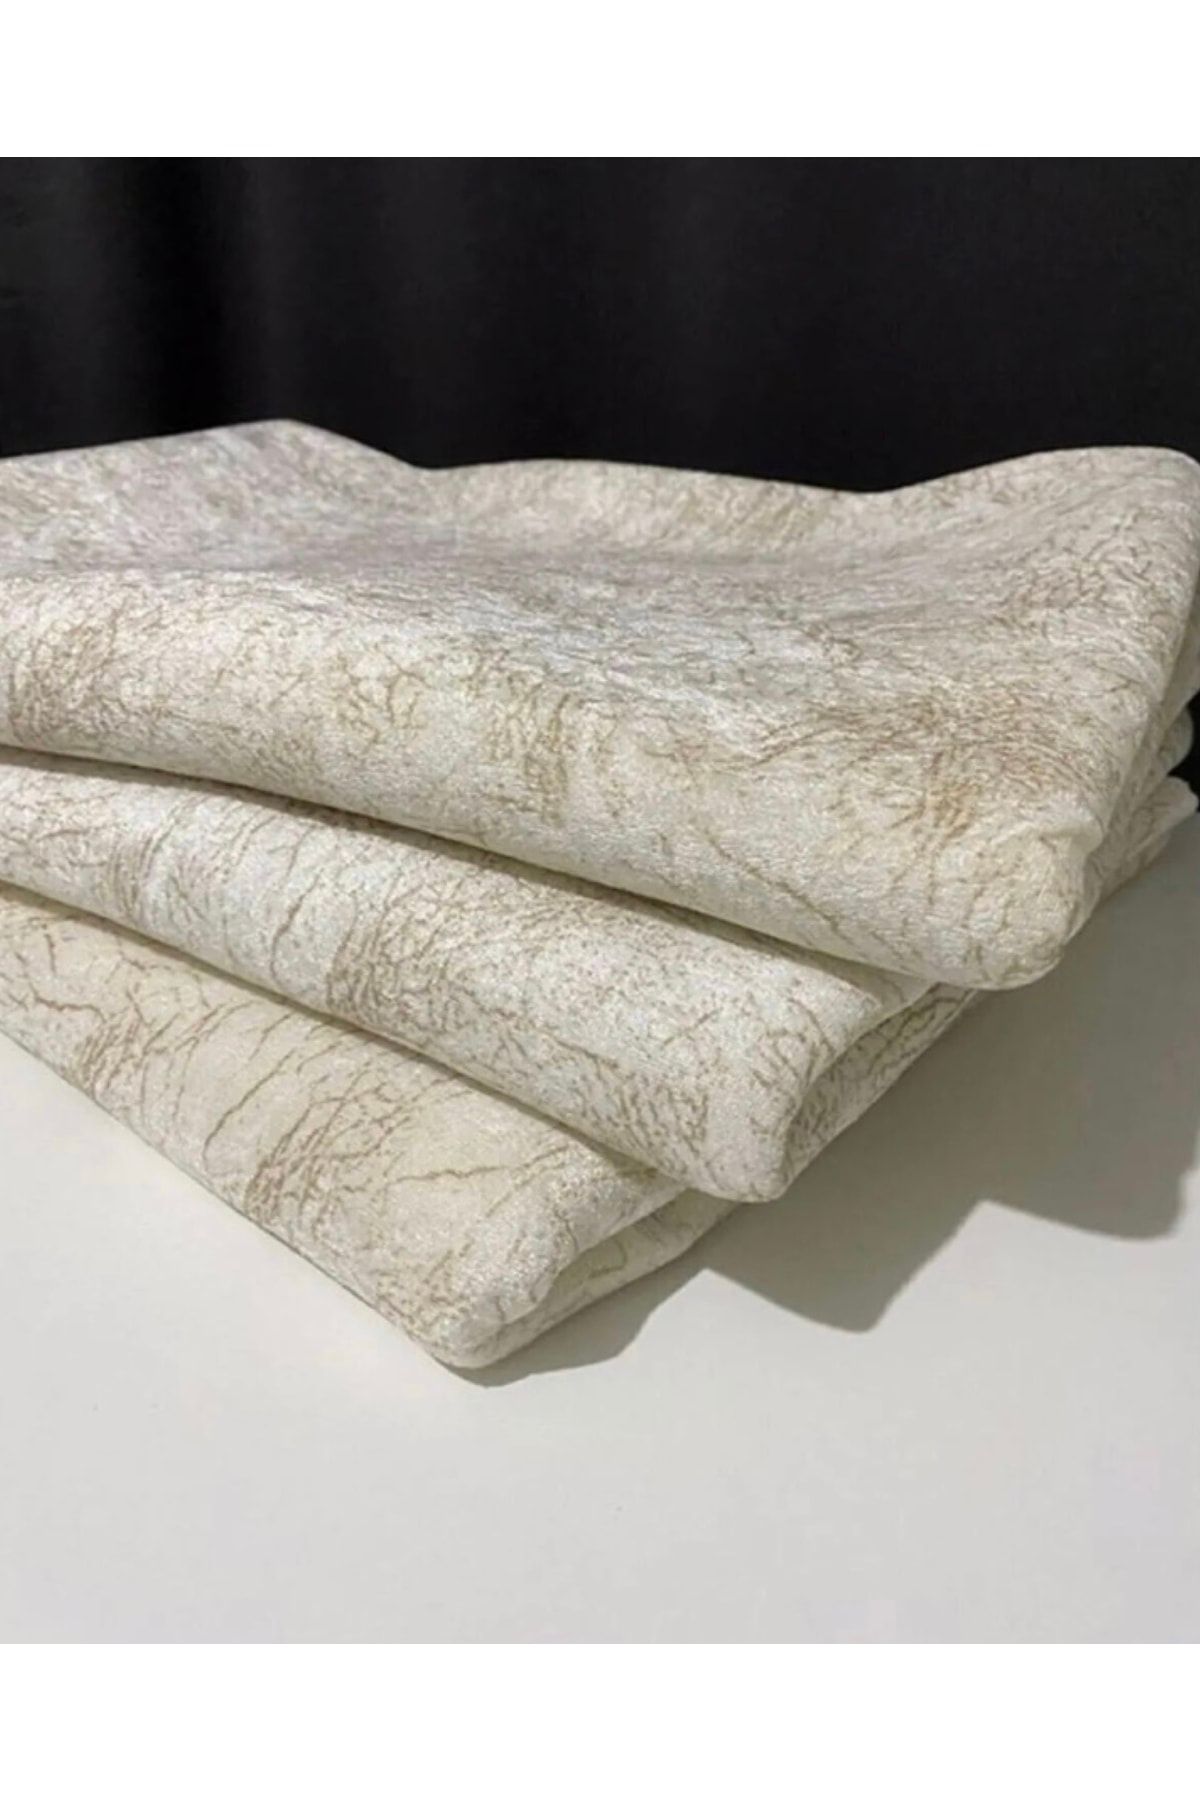 Cotton Lace Home Koltuk Çekyat Örtüsü Krem Damar Desenli Kaymaz Taban Süngerli Üst Kumaş Kadife